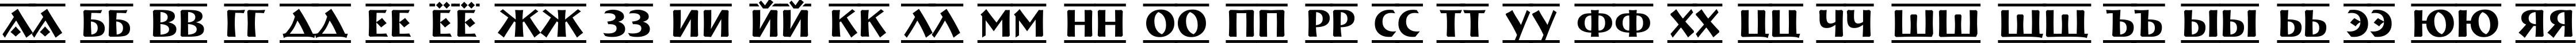 Пример написания русского алфавита шрифтом a_BremenDcFr